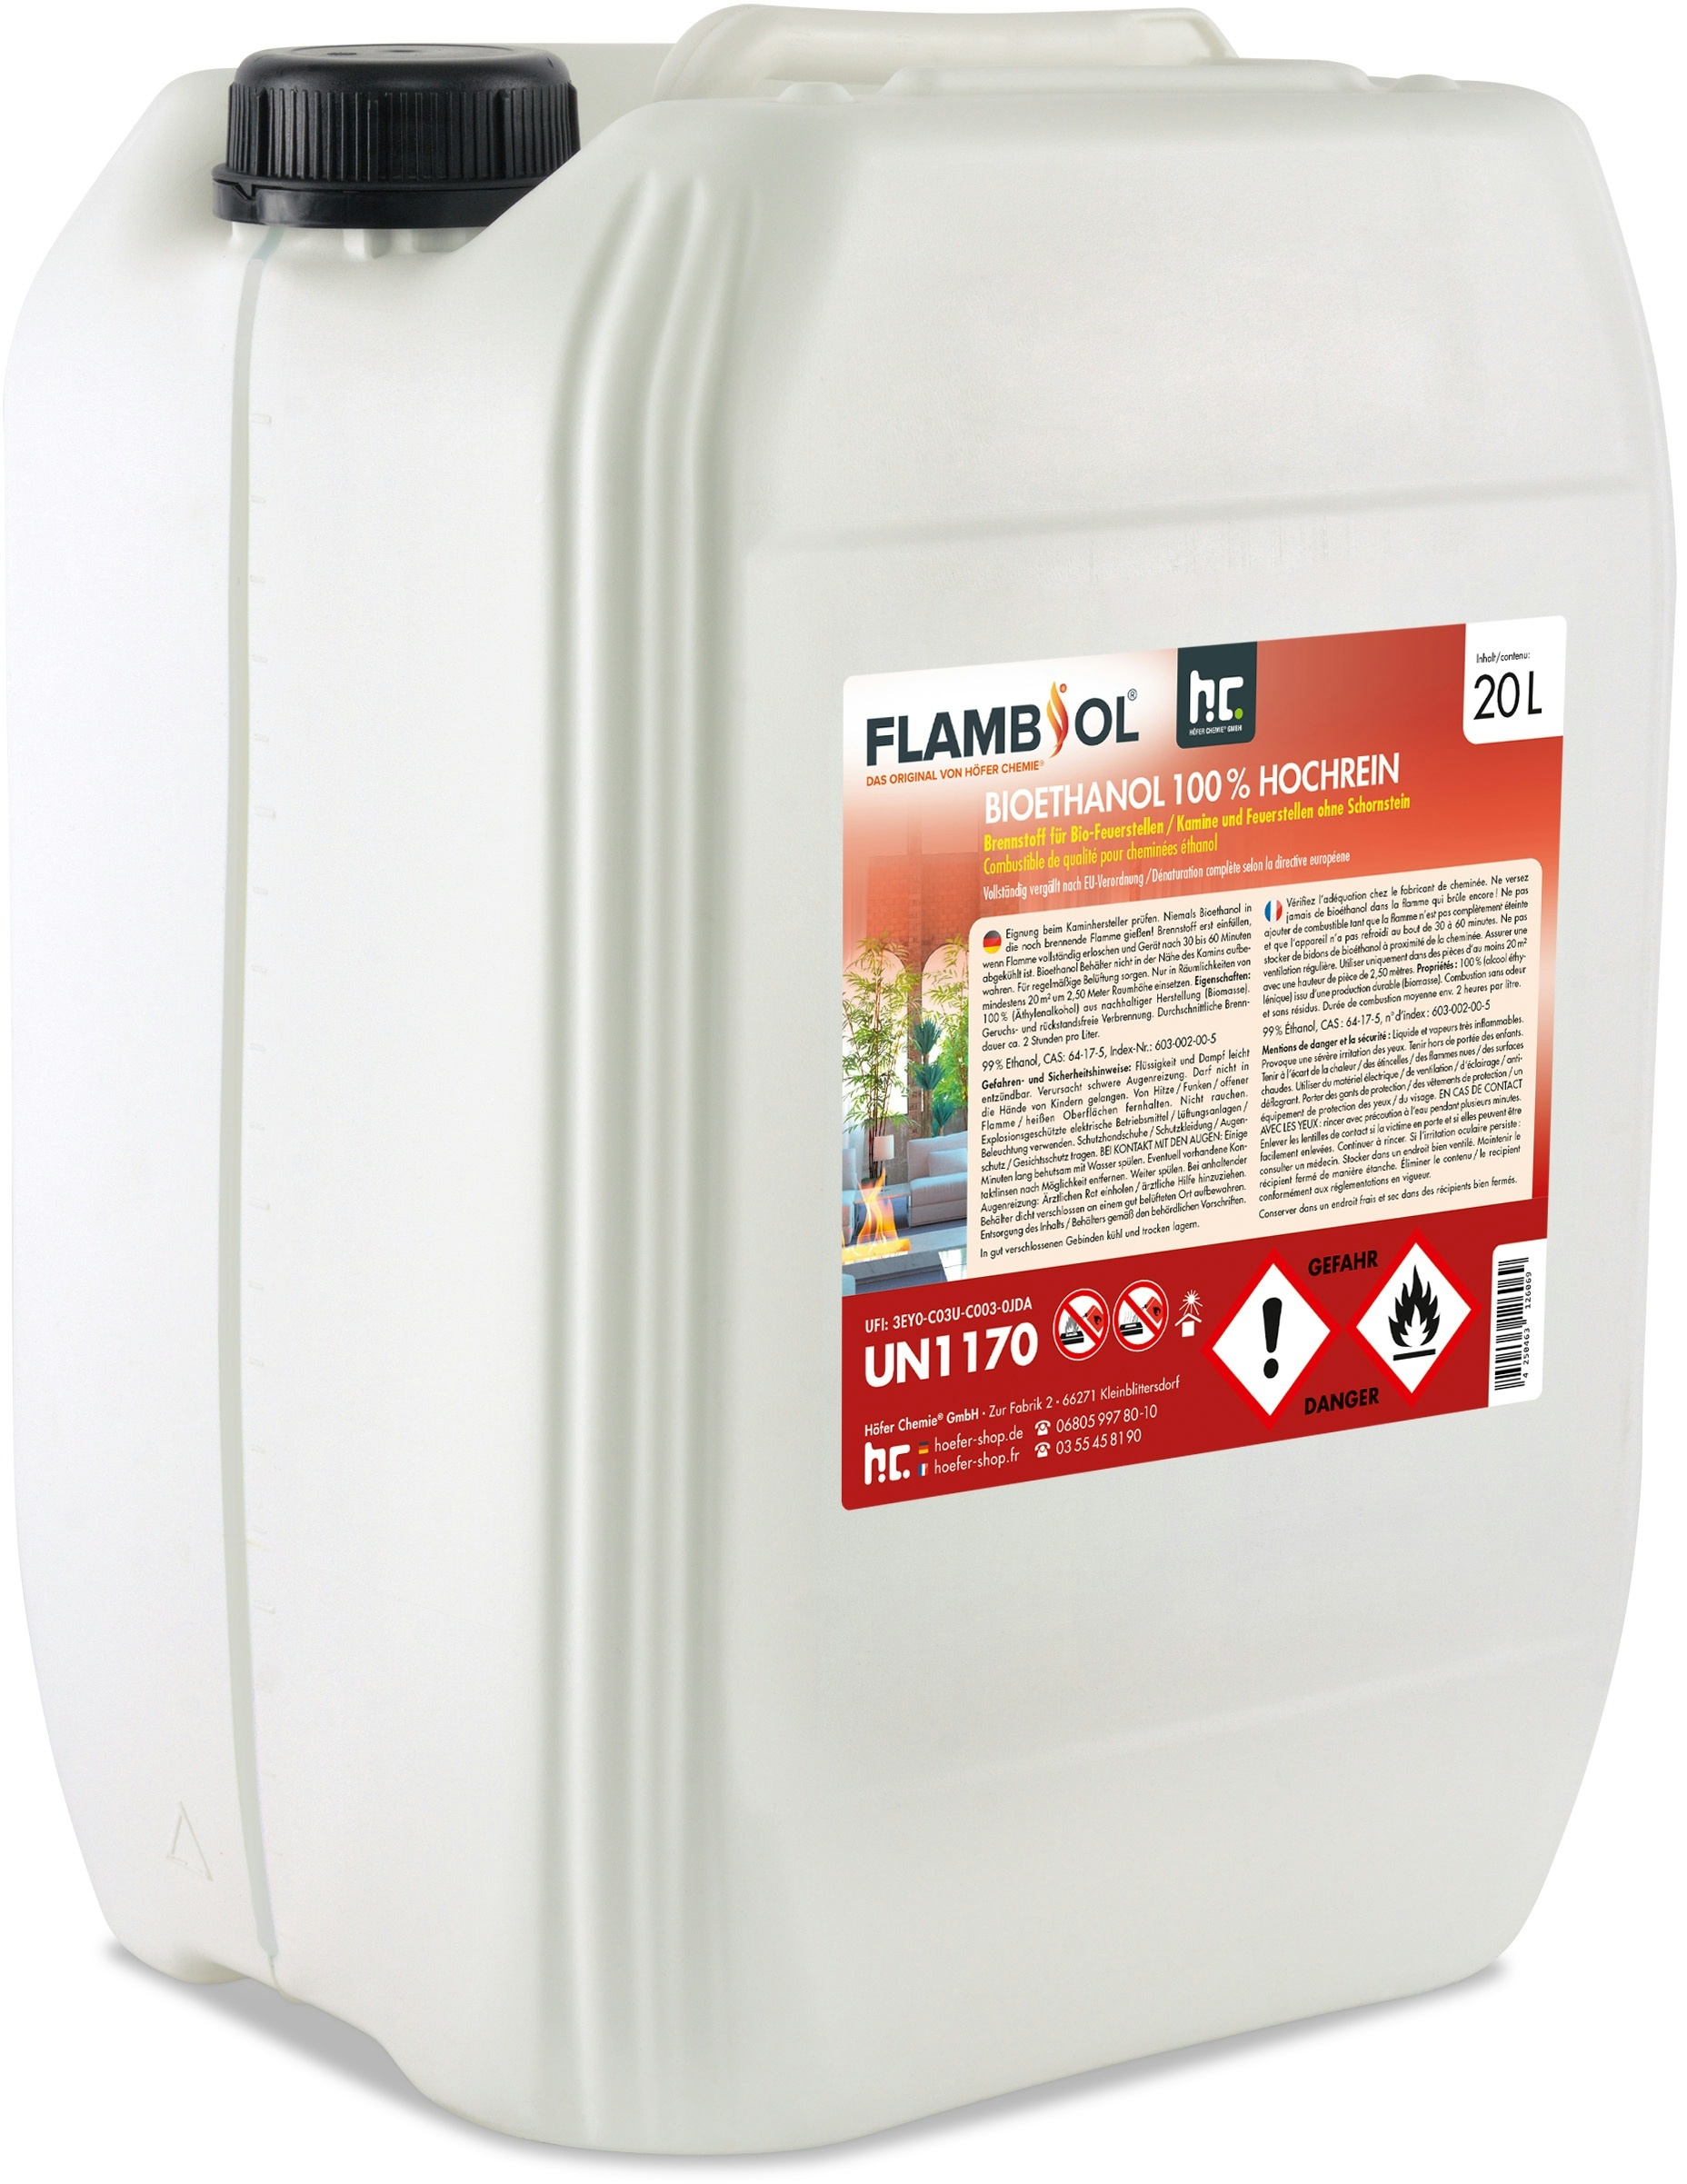 4 x 20 Liter FLAMBIOL® Bioethanol 100% Hochrein